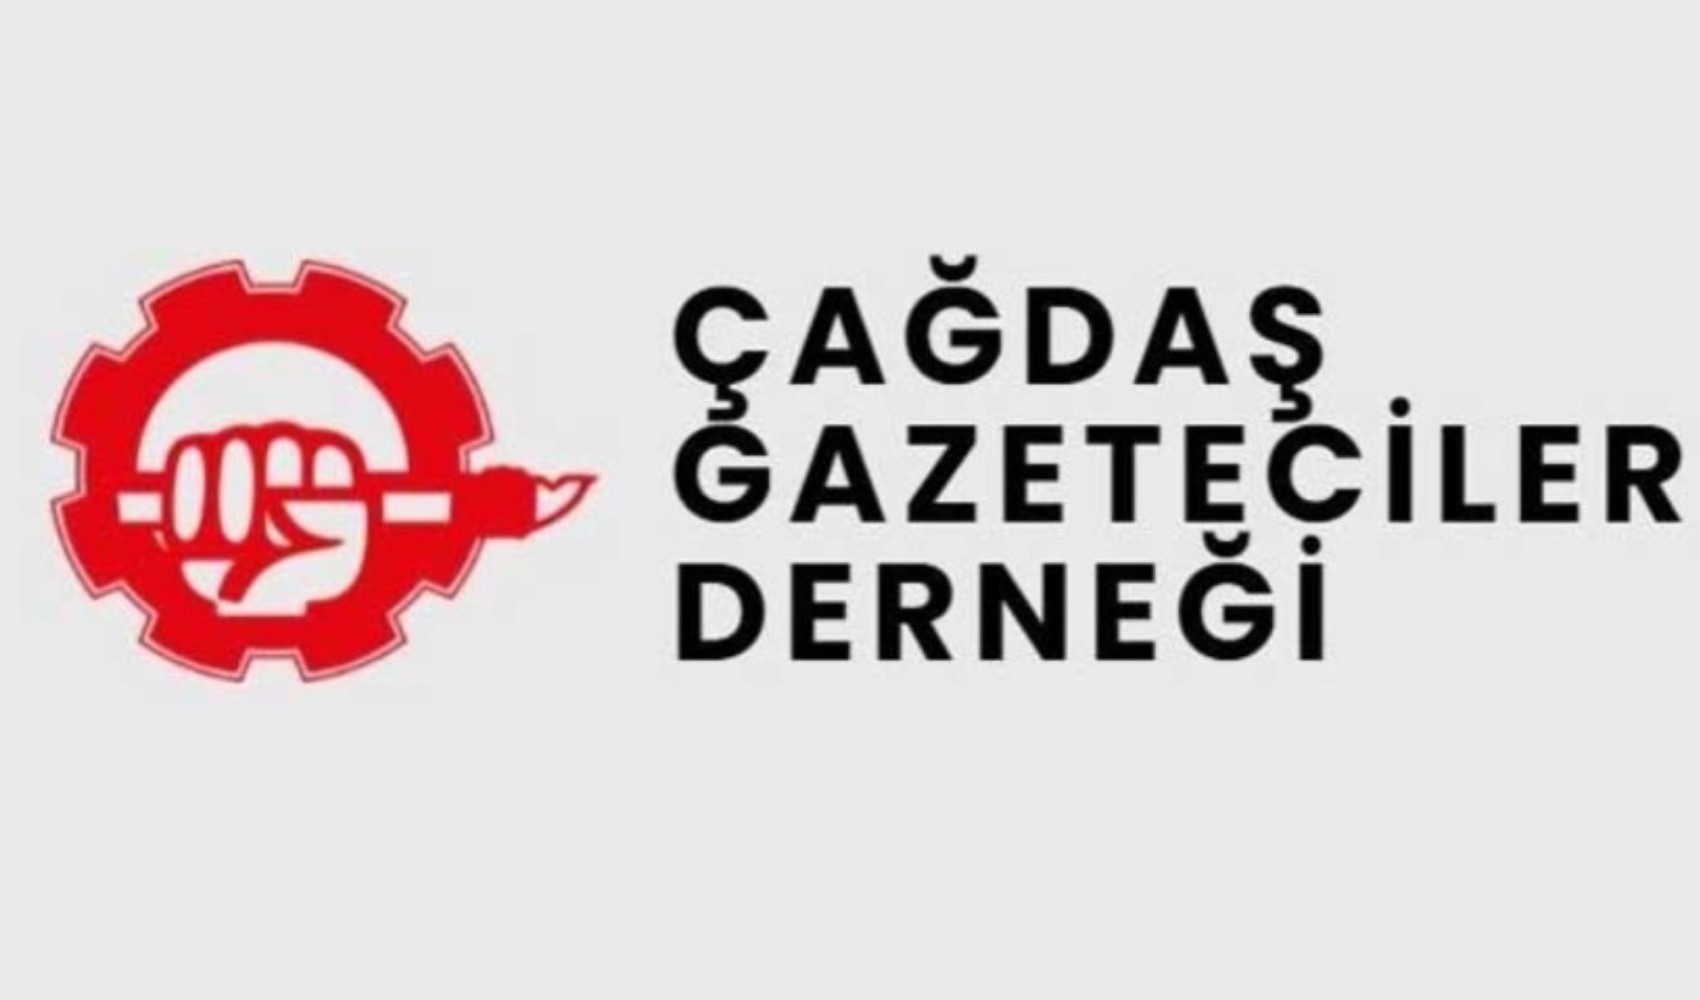 ÇGD ve TGC'den MHP'nin gazetecileri hedef gösteren açıklamalarına tepki: 'Yanlış tutumlarından dönmeye davet ediyoruz'